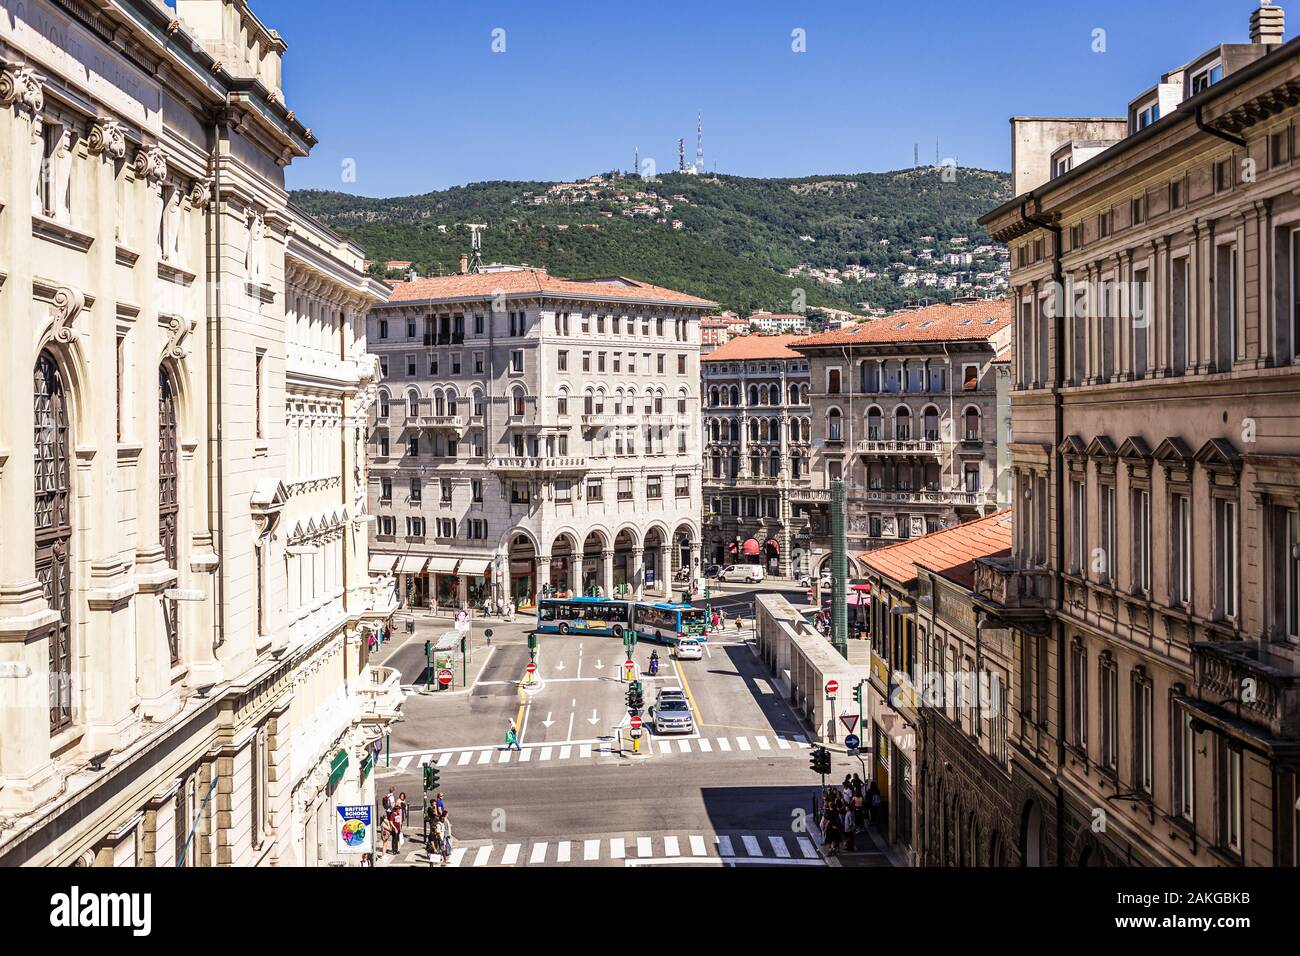 Vue sur la piazza Carlo Goldoni à Trieste, en Italie, à partir de la Scala dei Giganti. Skyline, théâtre et université visible. Banque D'Images